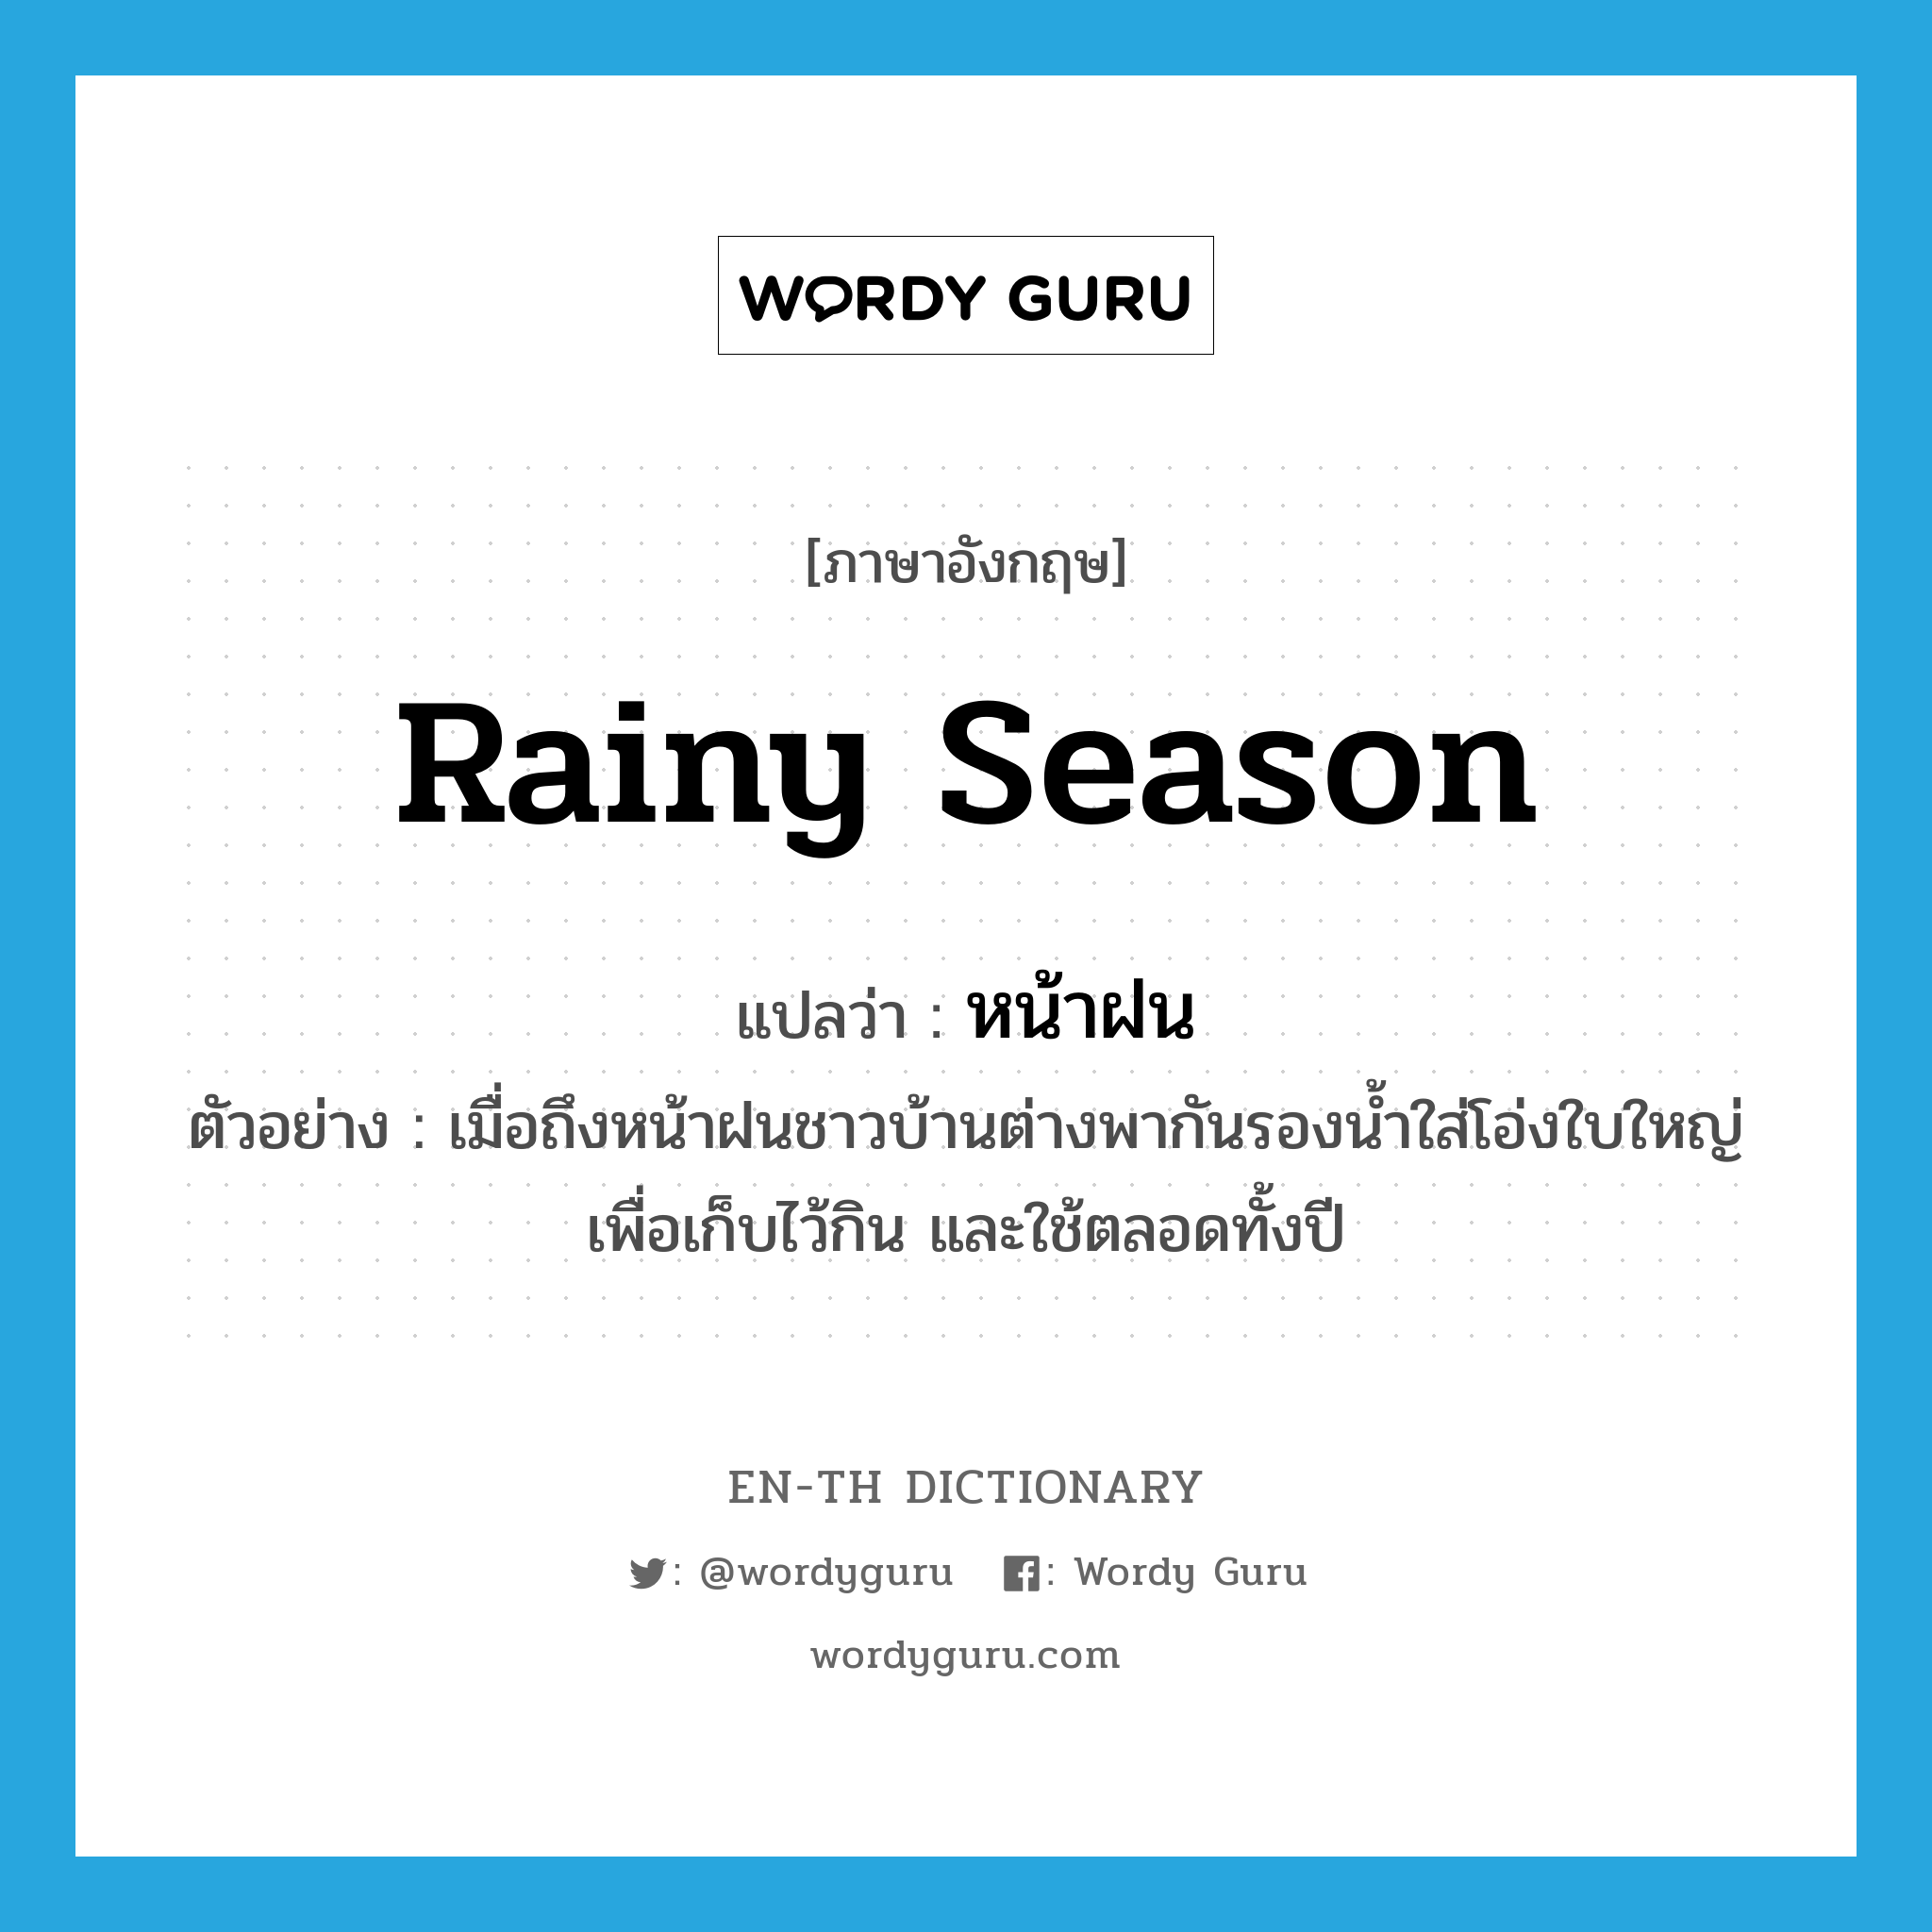 rainy season แปลว่า?, คำศัพท์ภาษาอังกฤษ rainy season แปลว่า หน้าฝน ประเภท N ตัวอย่าง เมื่อถึงหน้าฝนชาวบ้านต่างพากันรองน้ำใส่โอ่งใบใหญ่ เพื่อเก็บไว้กิน และใช้ตลอดทั้งปี หมวด N